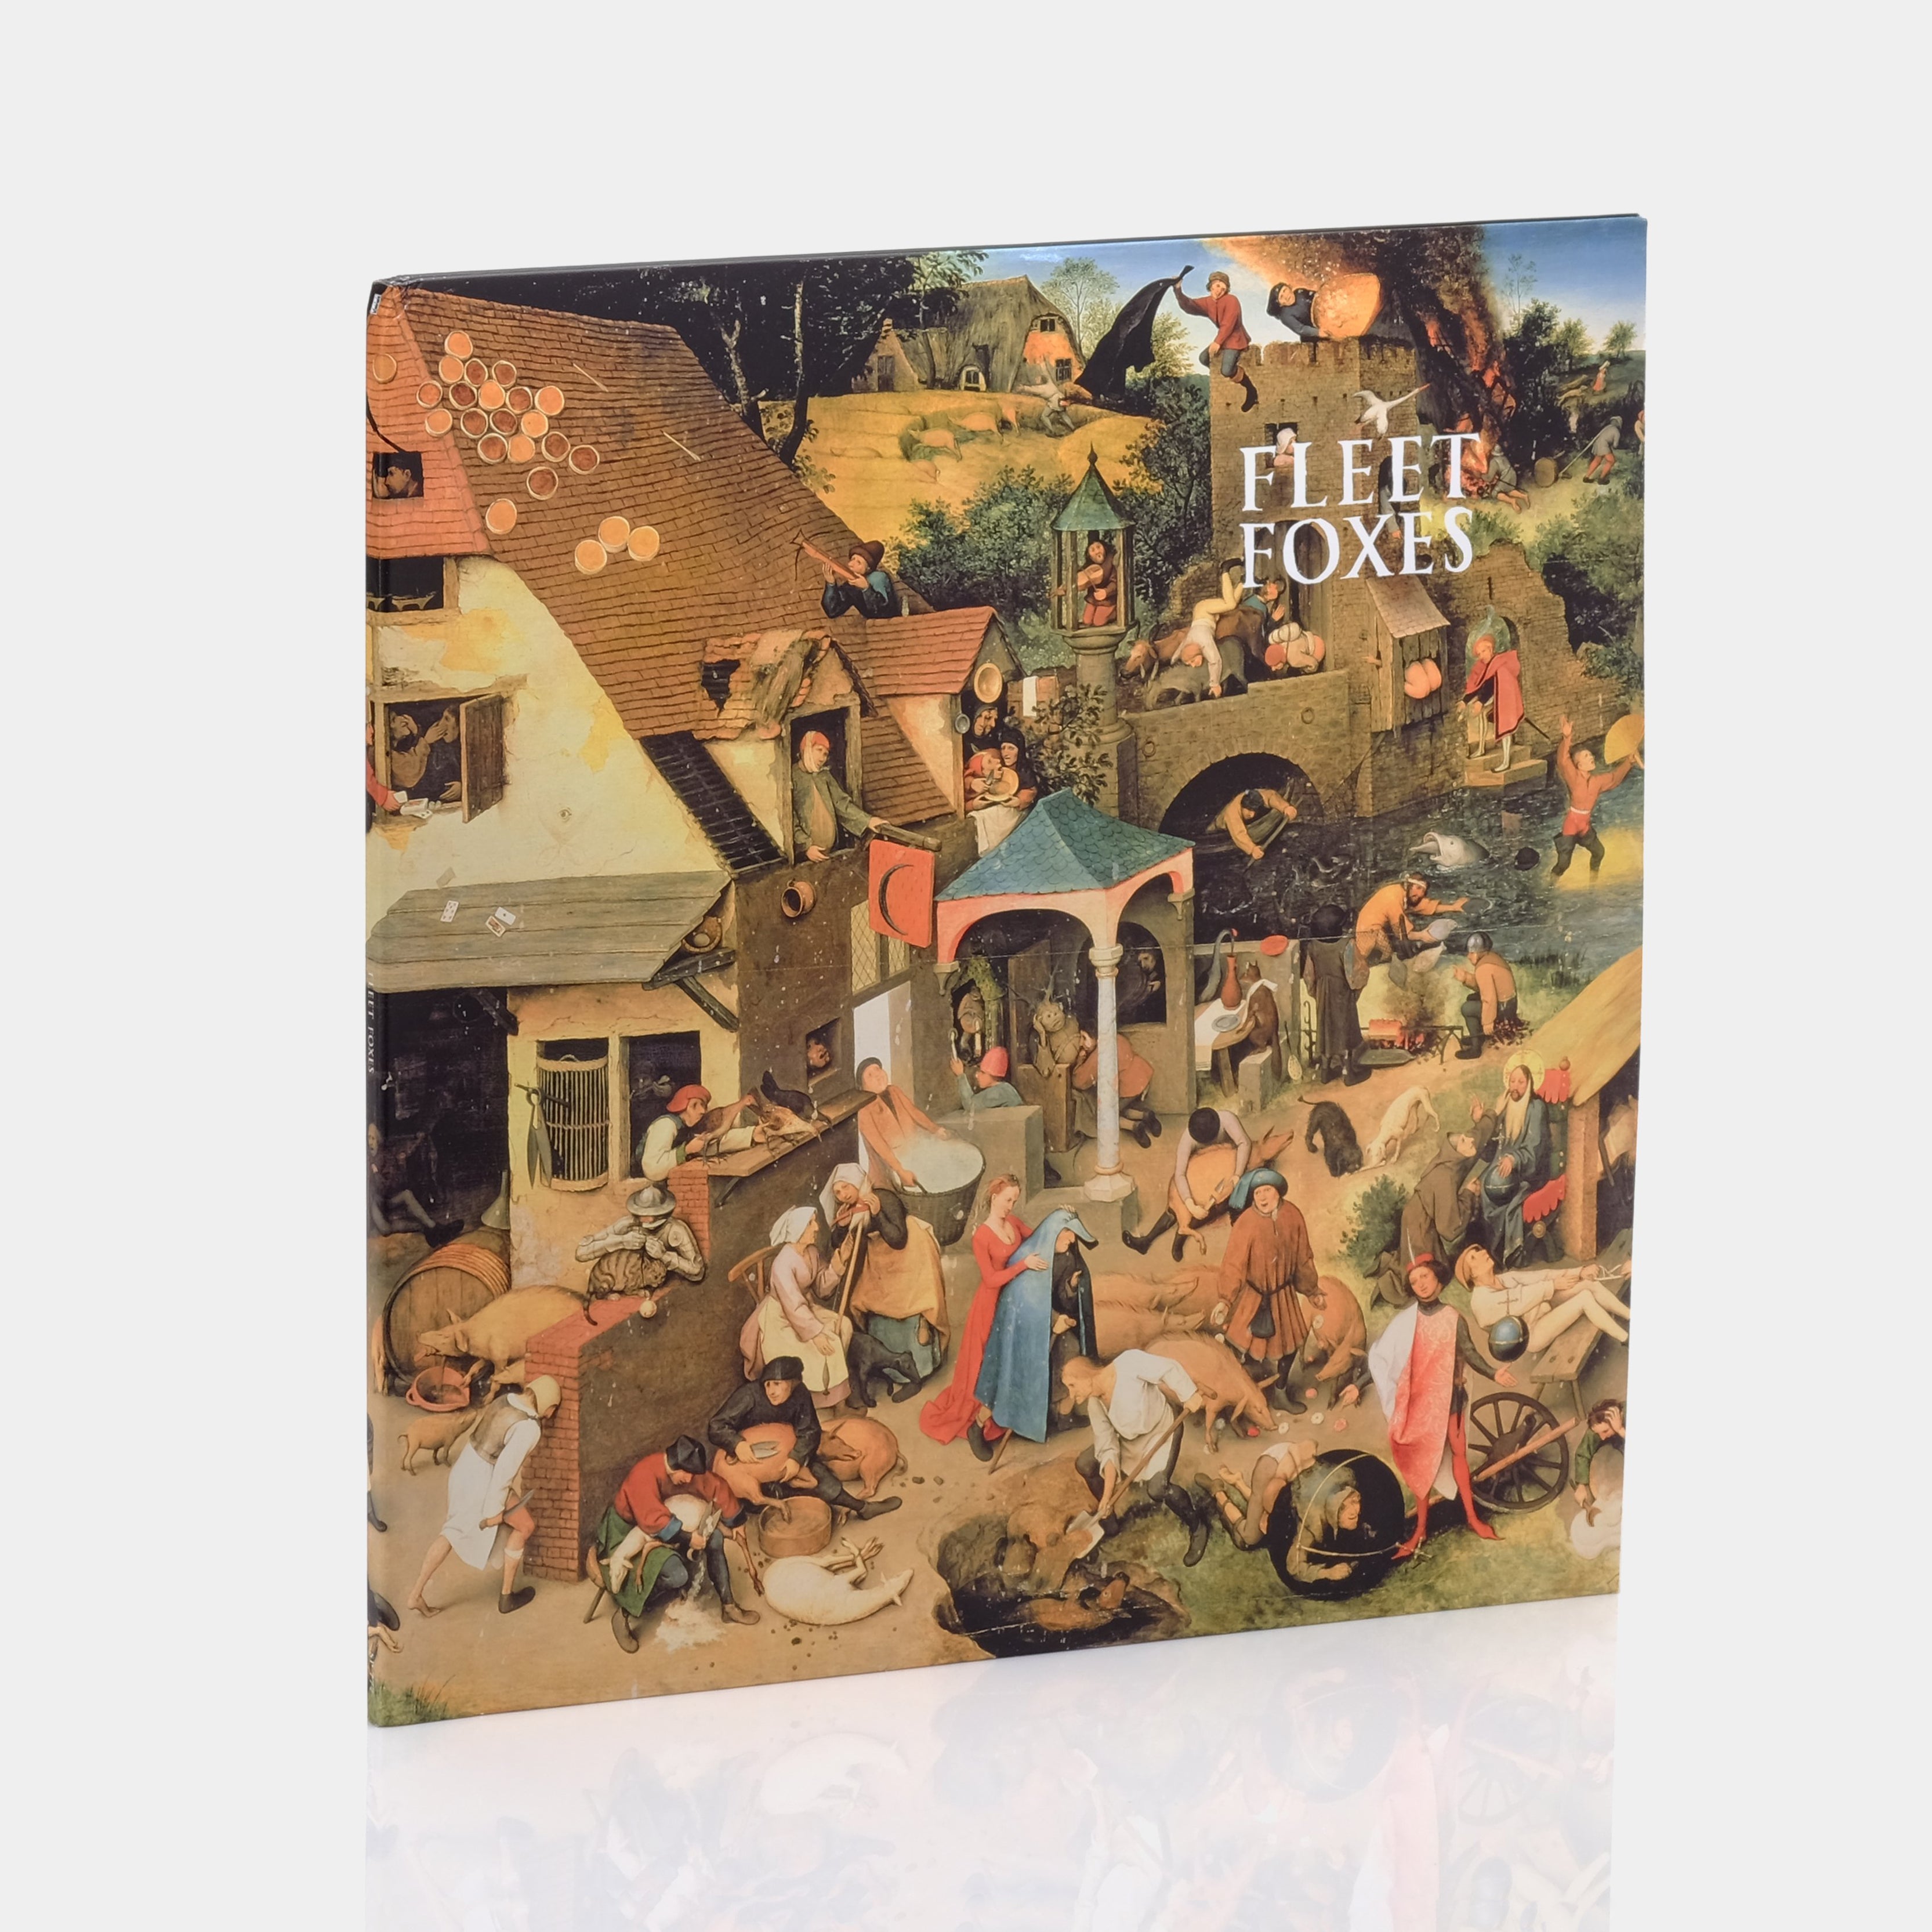 Fleet Foxes - Fleet Foxes 2xLP Vinyl Record